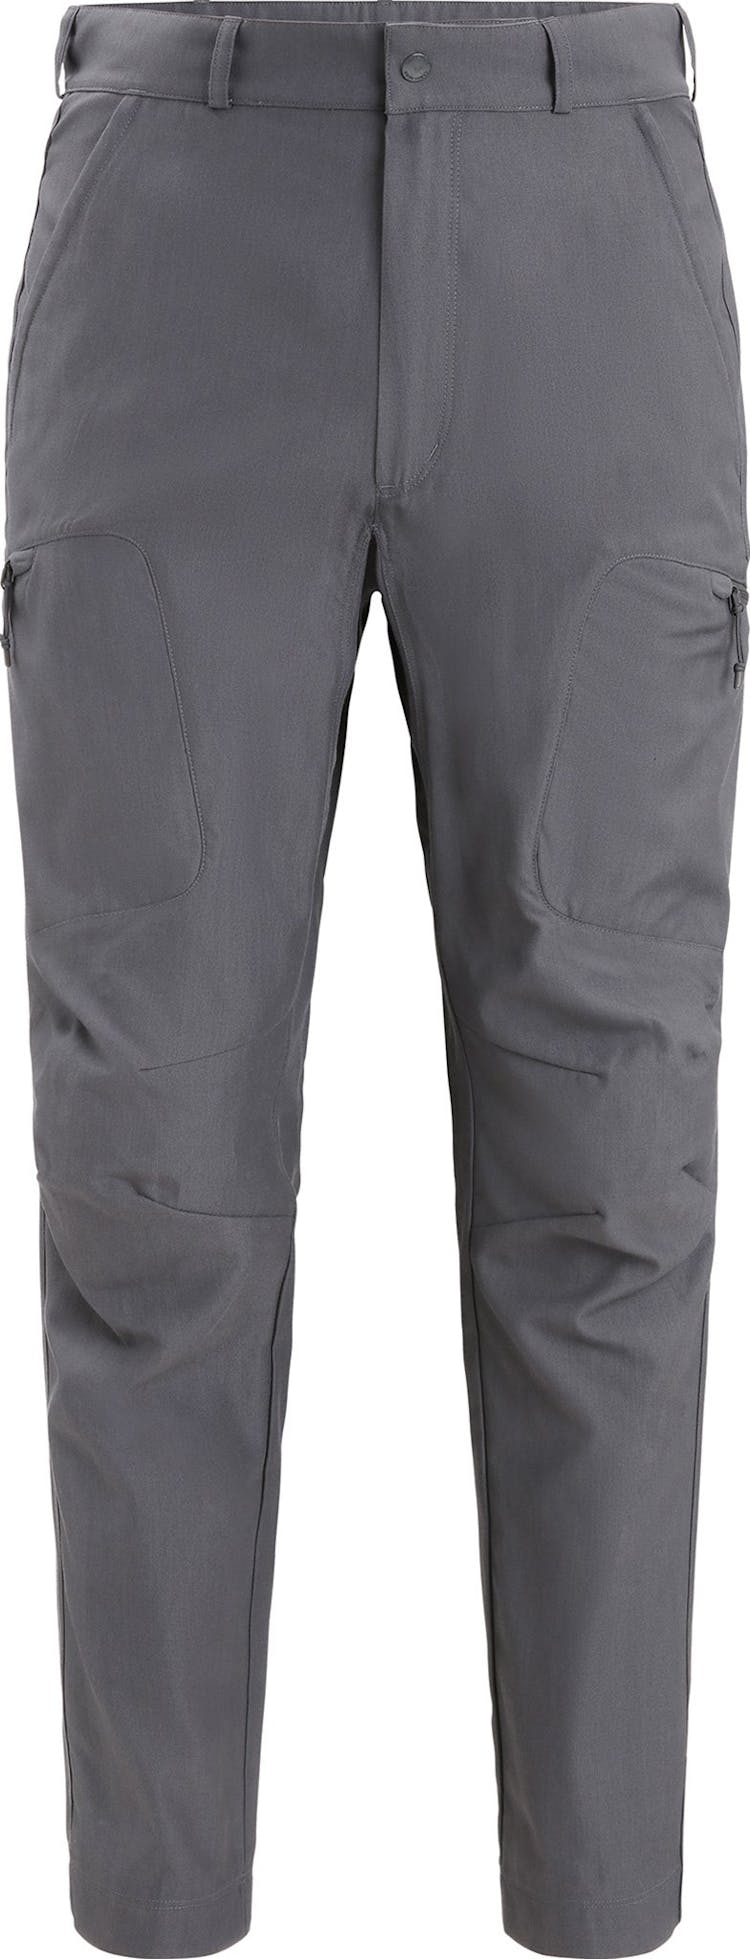 Numéro de l'image de la galerie de produits 1 pour le produit Pantalon de randonnée en mérinos - Homme